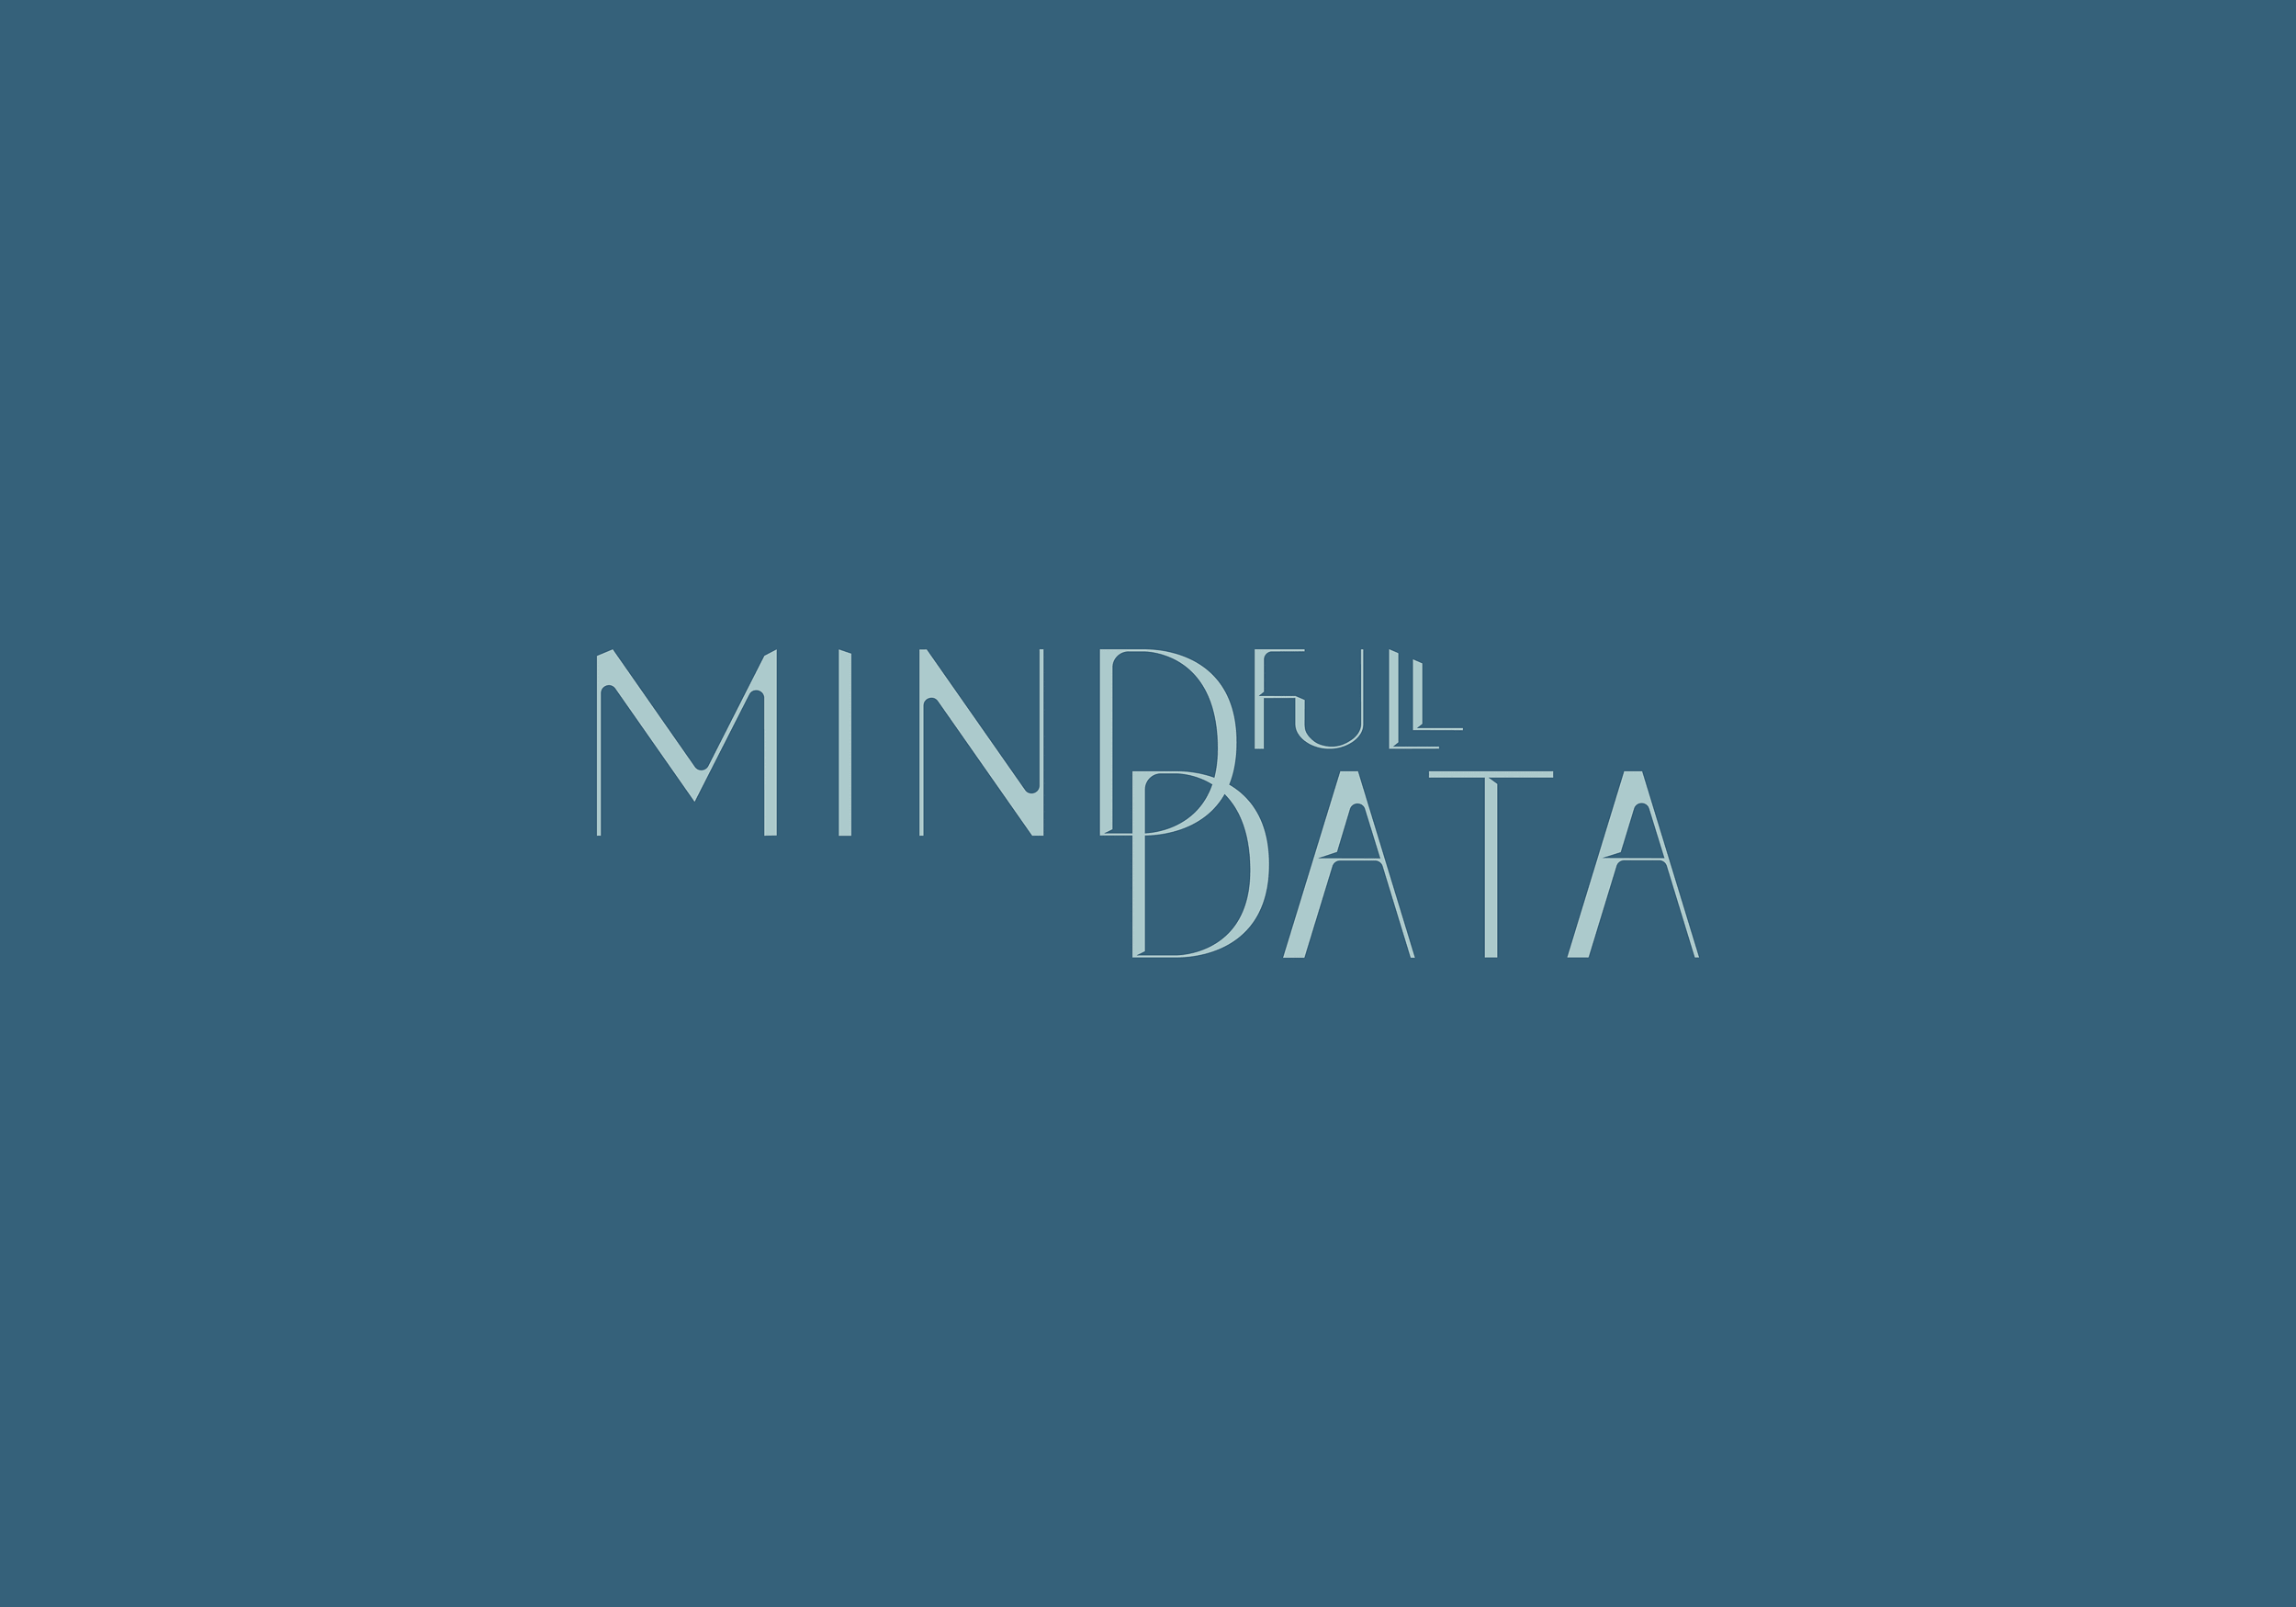 Das Logo von MINDfull DATA, mit dem Brand Design der Firma